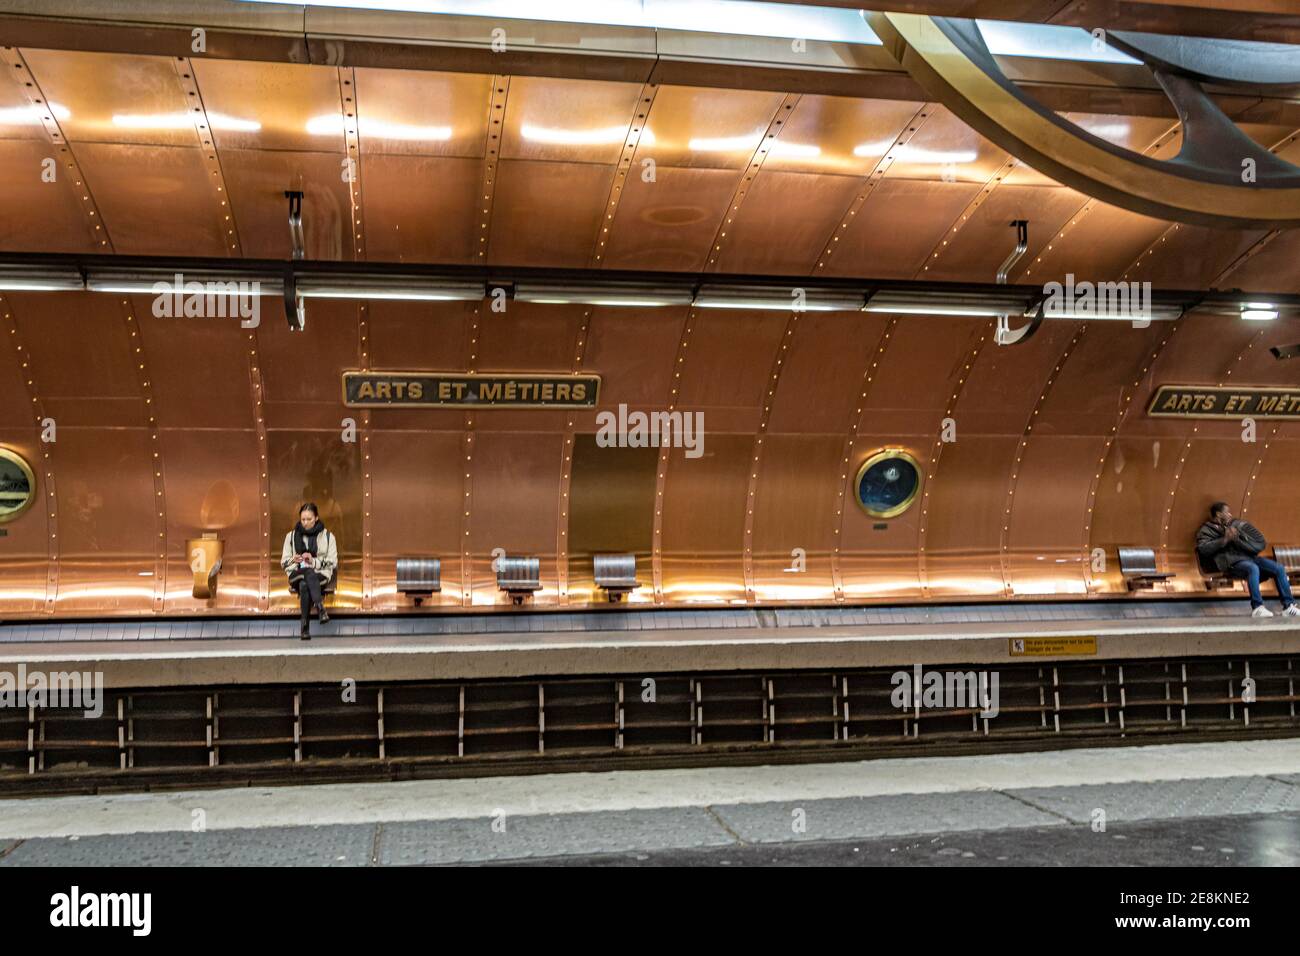 Station de métro Arts et métiers sur le réseau de métro de Paris. La plate-forme de la ligne 11 a les murs tapissés de cuivre et de hublots . Paris, France Banque D'Images